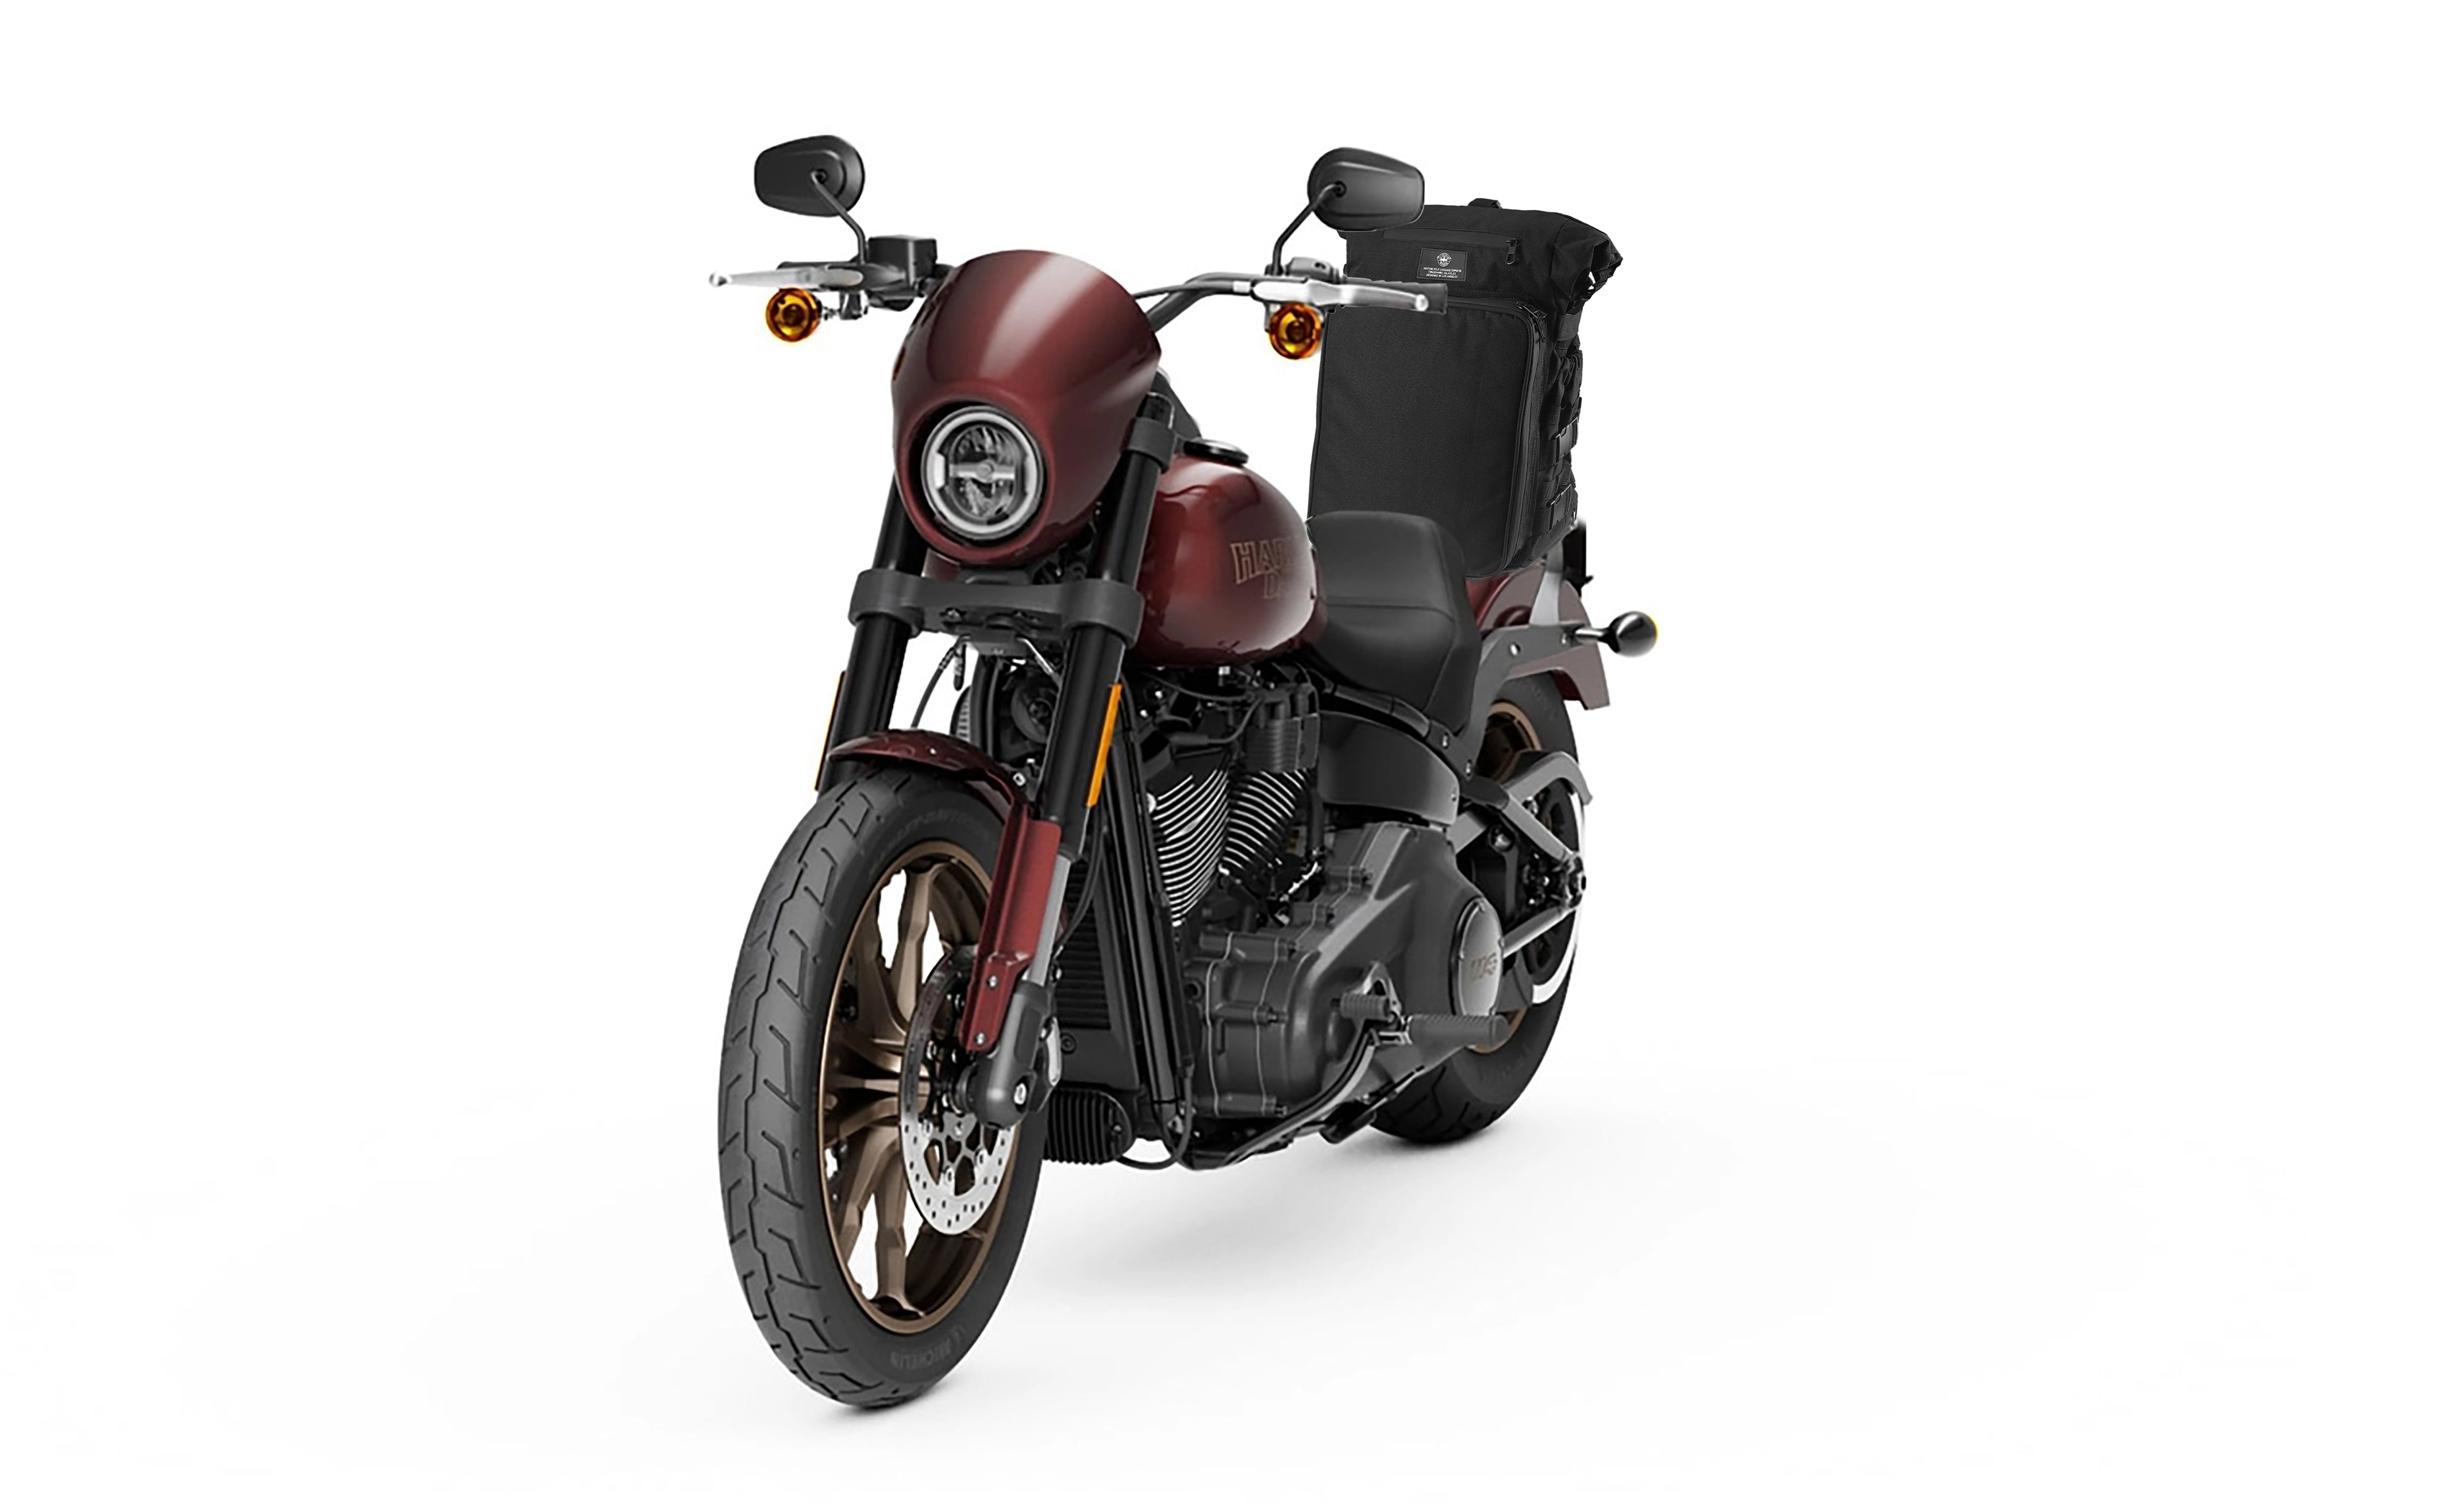 Viking Renegade XL Honda Motorcycle Sissy Bar Bag Bag on Bike View @expand